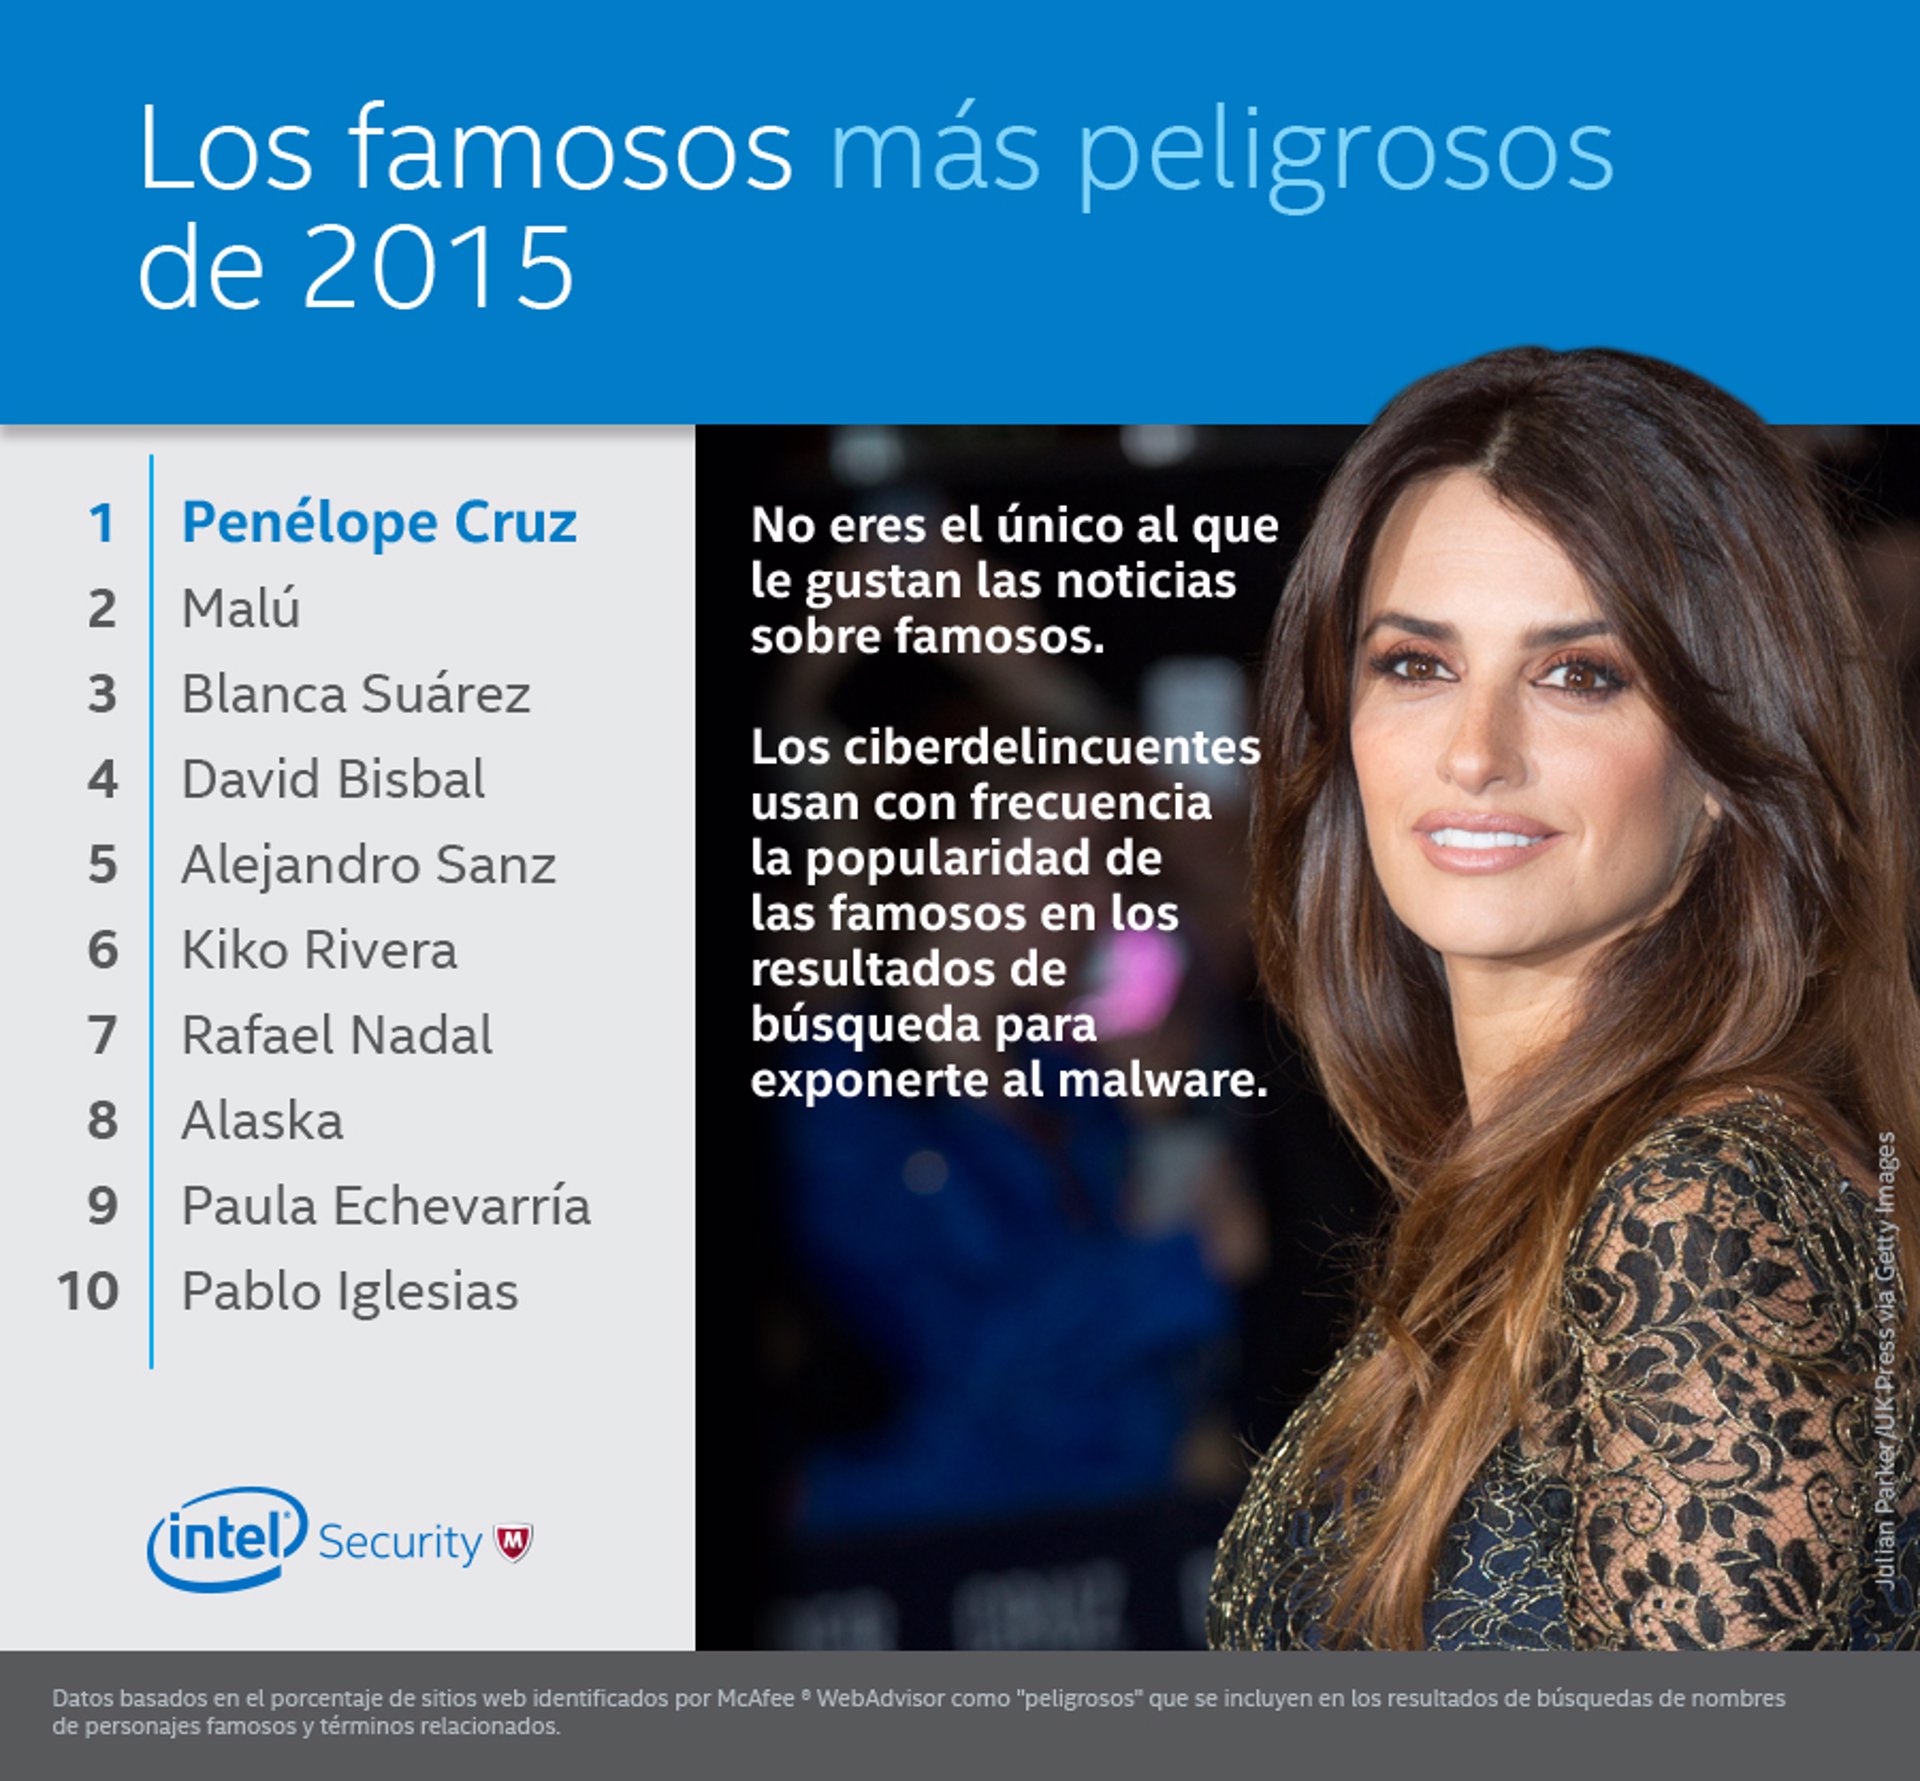 Infografía de Intel con los 10 famosos españoles más peligrosos